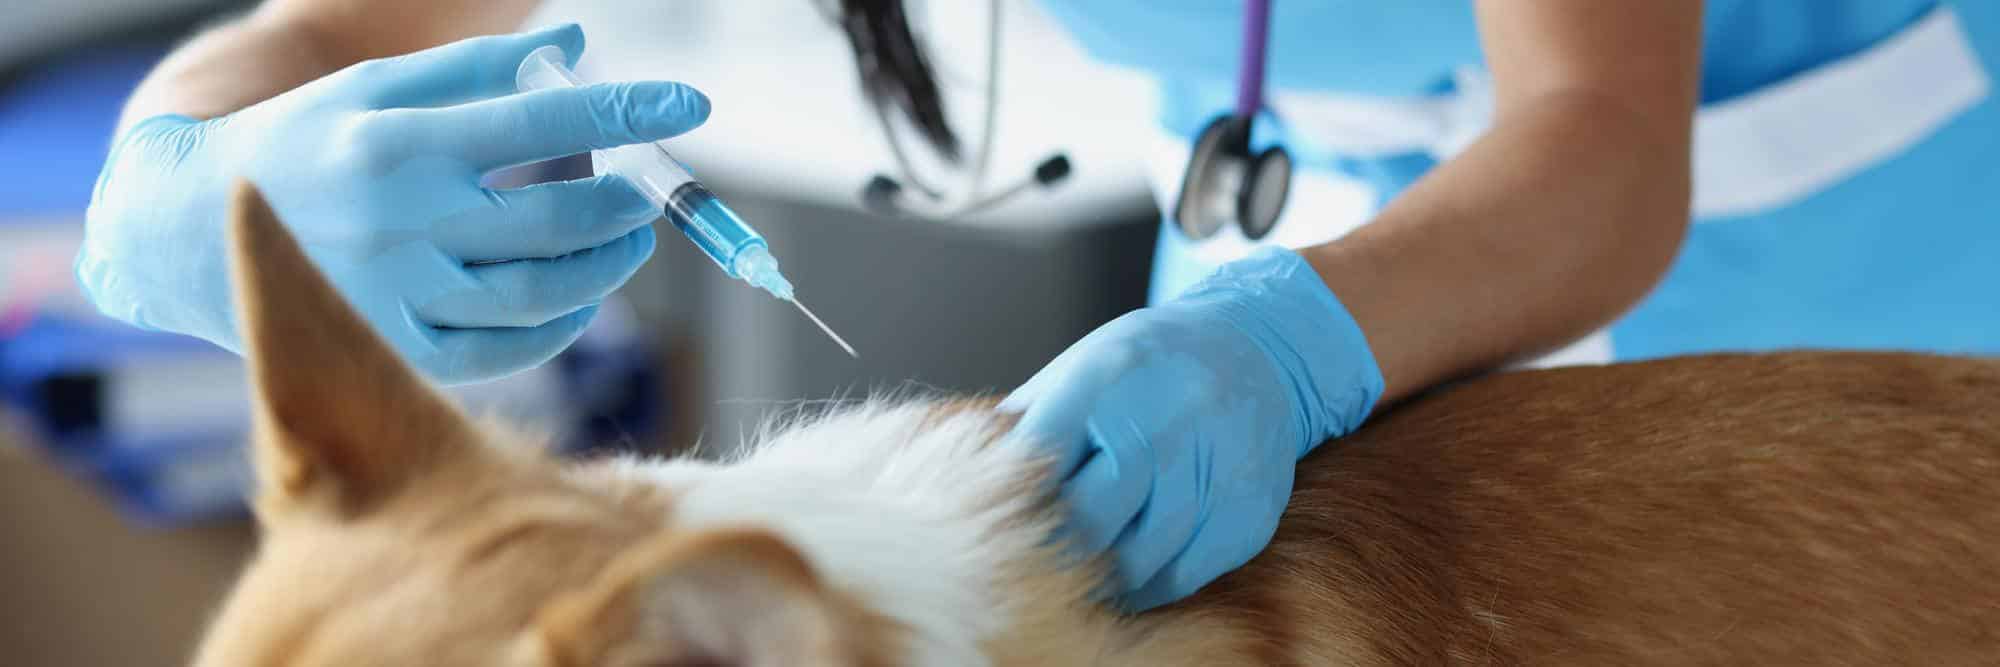 Cuales-son-las-vacunas-obligatorias-para-perros-y-gatos.